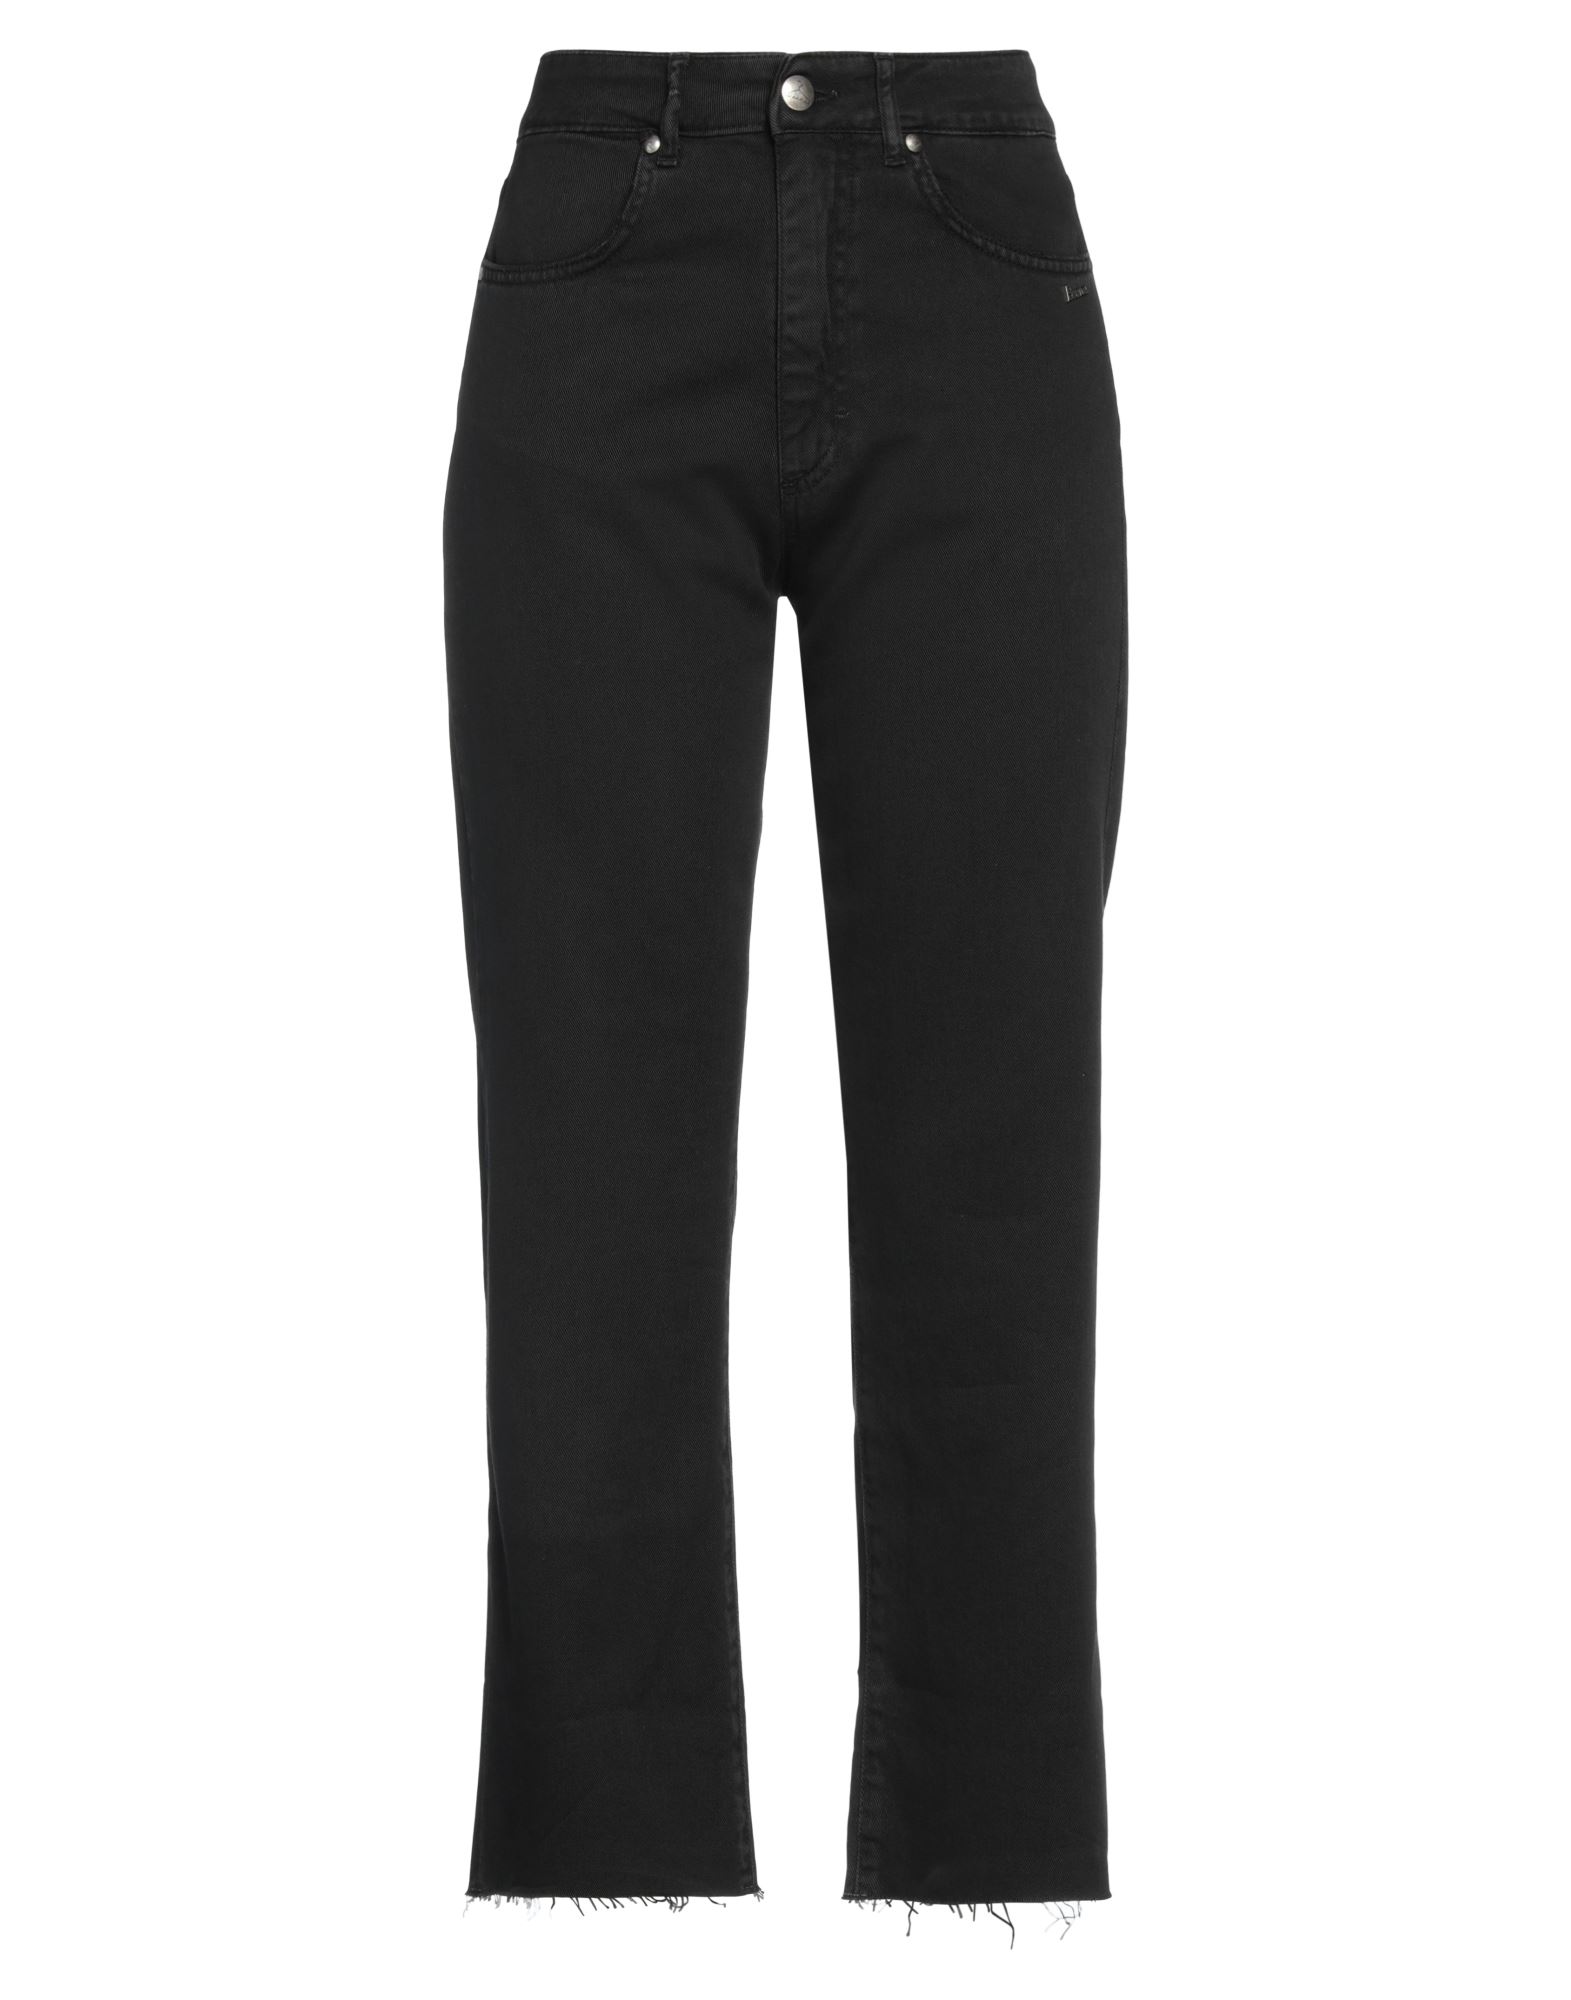 Shop Berna Woman Pants Black Size 6 Cotton